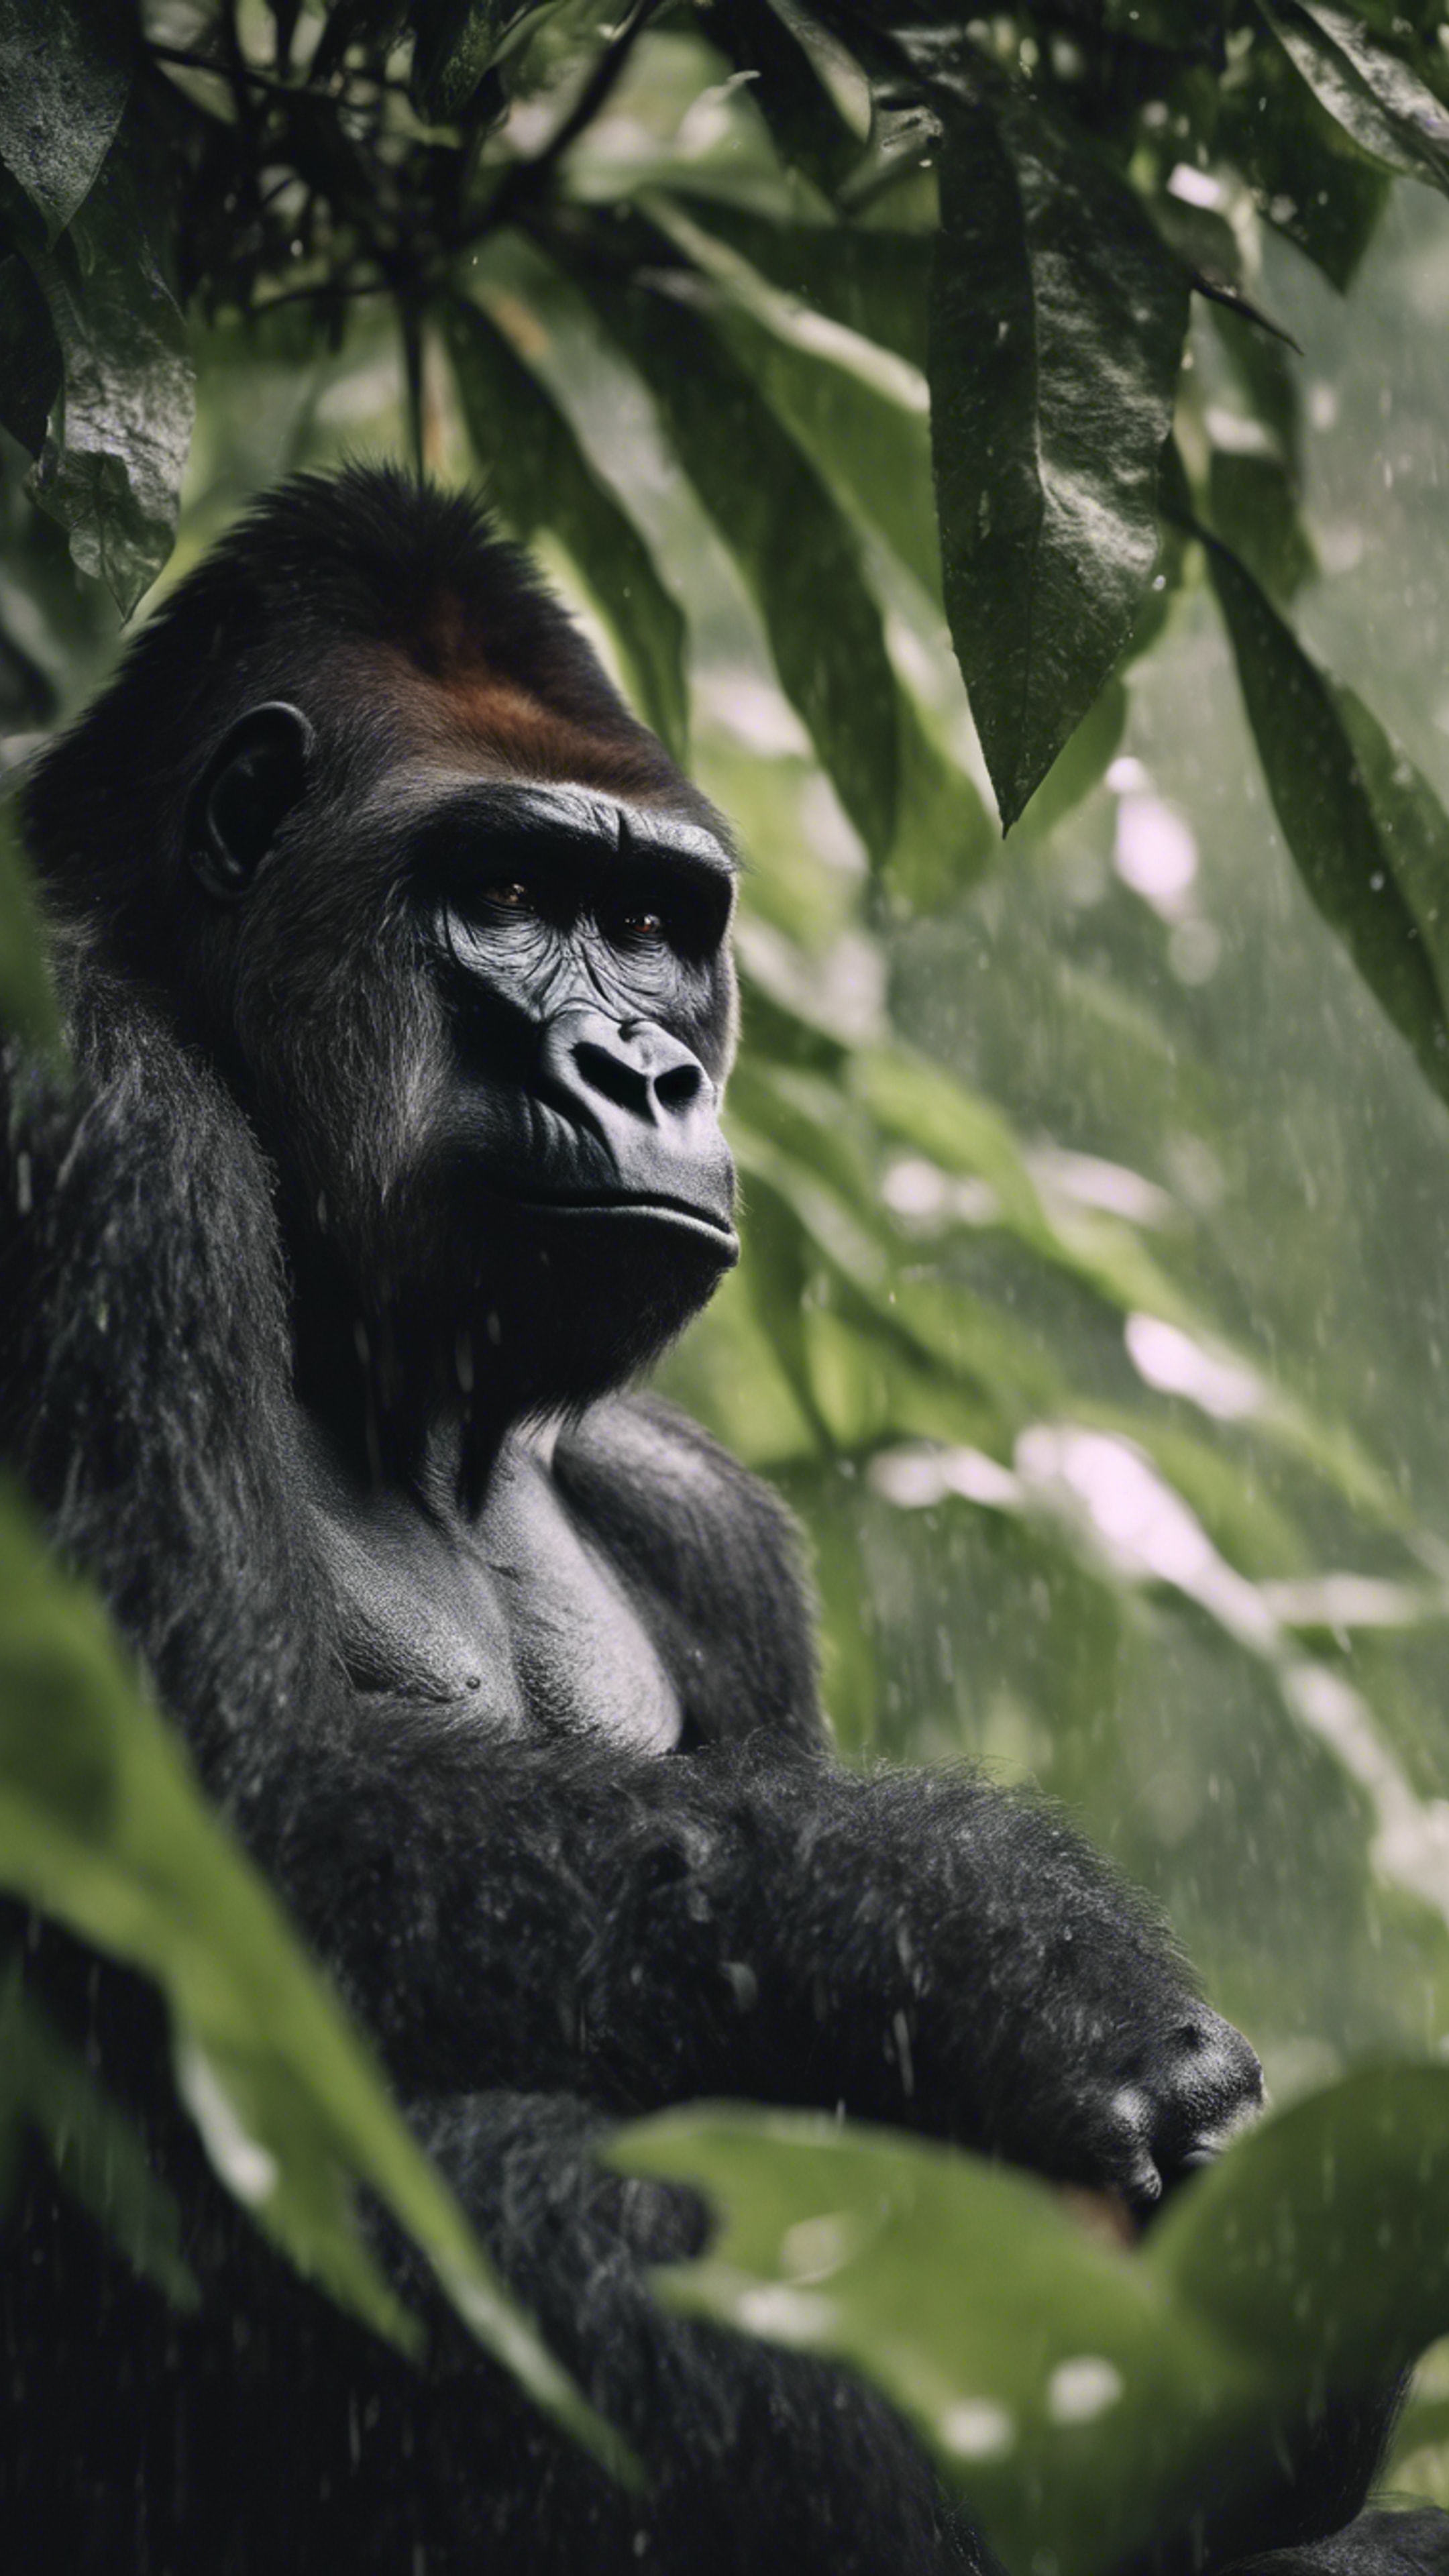 A sad gorilla on a rainy day, gazing out from under the shelter of giant leaves. duvar kağıdı[ce7c66a51f504b8e8f6d]